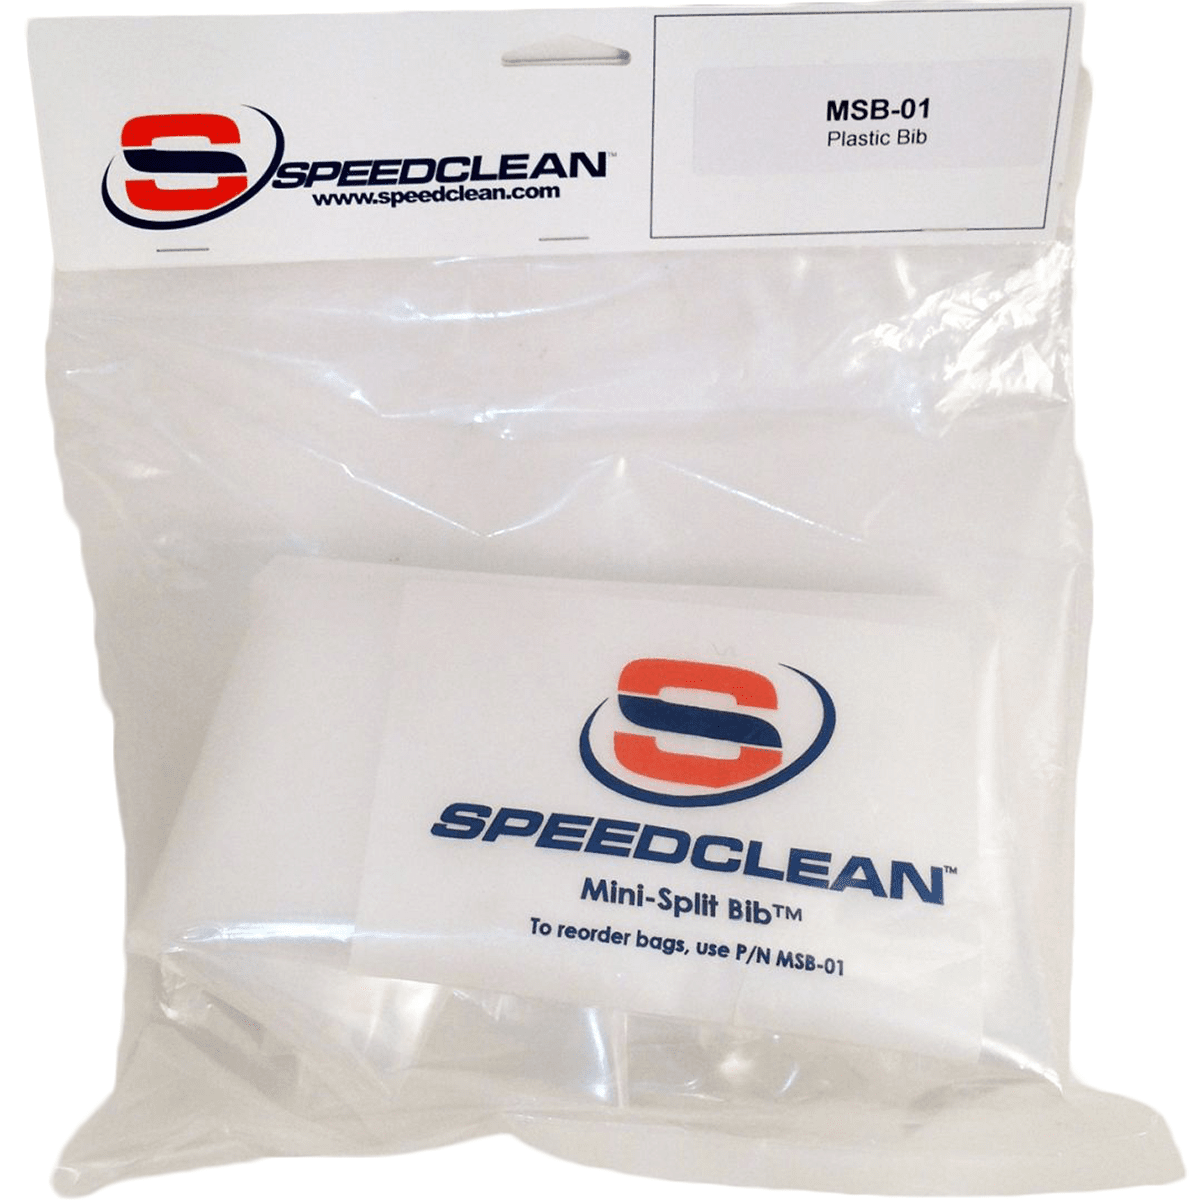 Speedclean Mini Split Bib Kit Replacement Bib (msb-01)